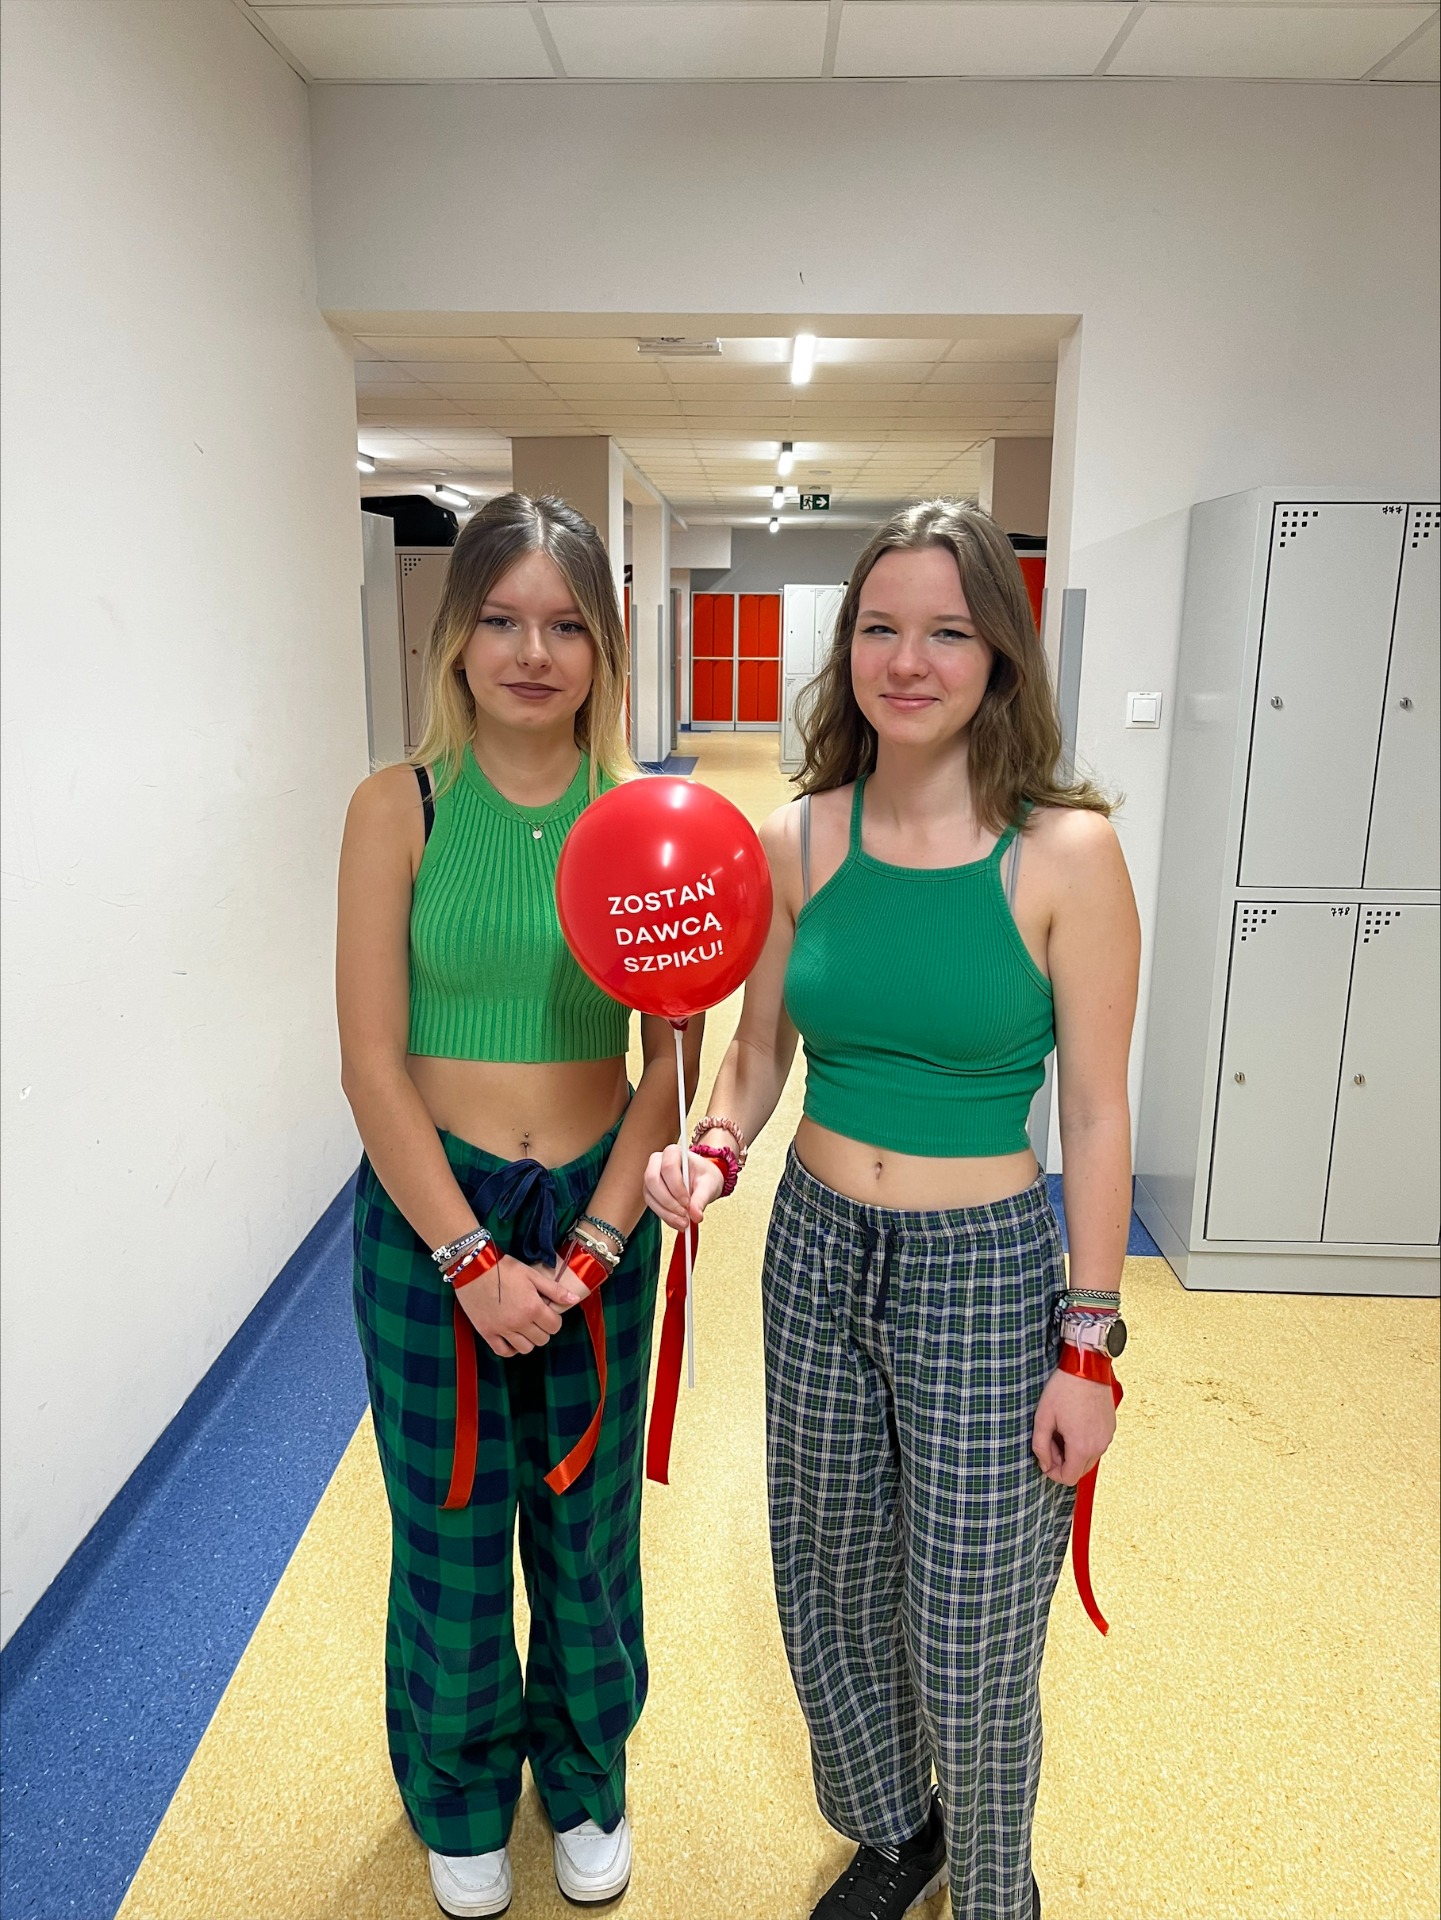 Dwie uczennice z czerwonym balonem z napisem "Zostań dawcą szpiku"